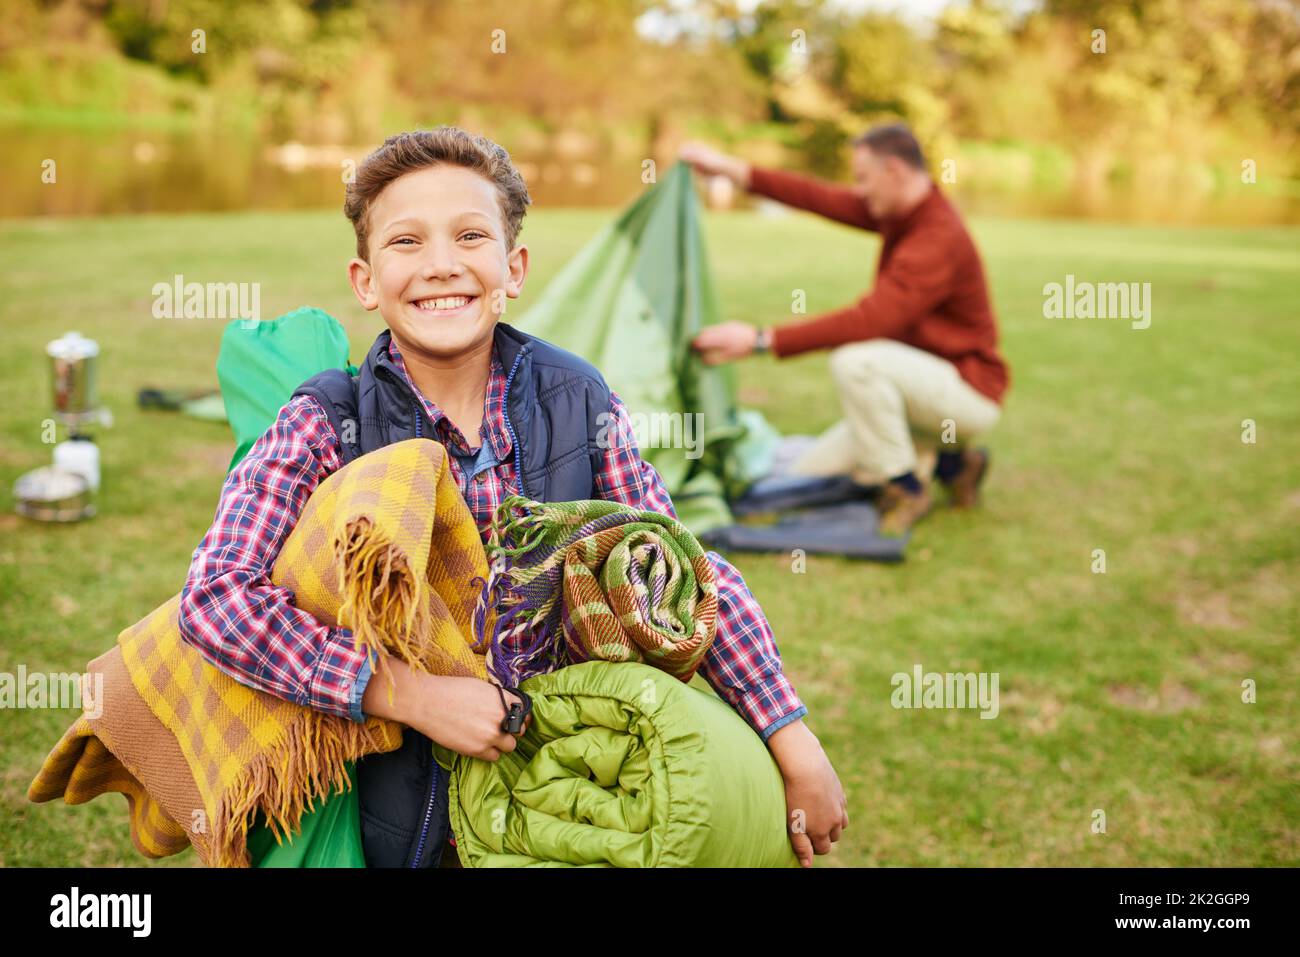 Dieser Campingausflug wird fantastisch sein. Porträt eines Jungen, der Campingausrüstung mit seinem Vater im Hintergrund hält. Stockfoto